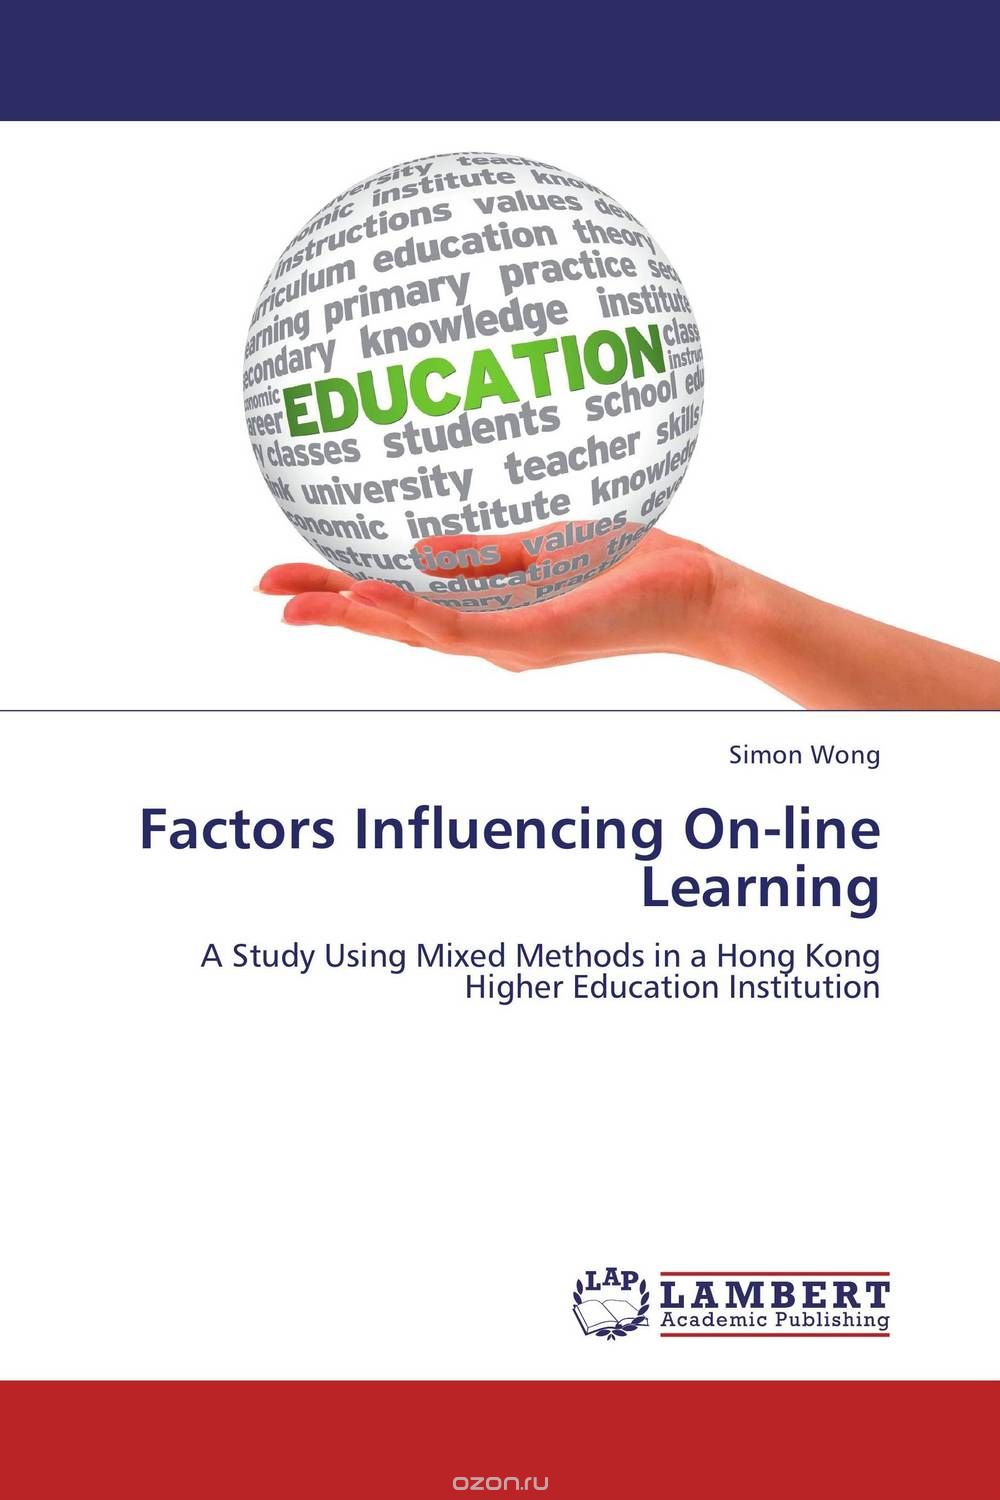 Скачать книгу "Factors Influencing On-line Learning"